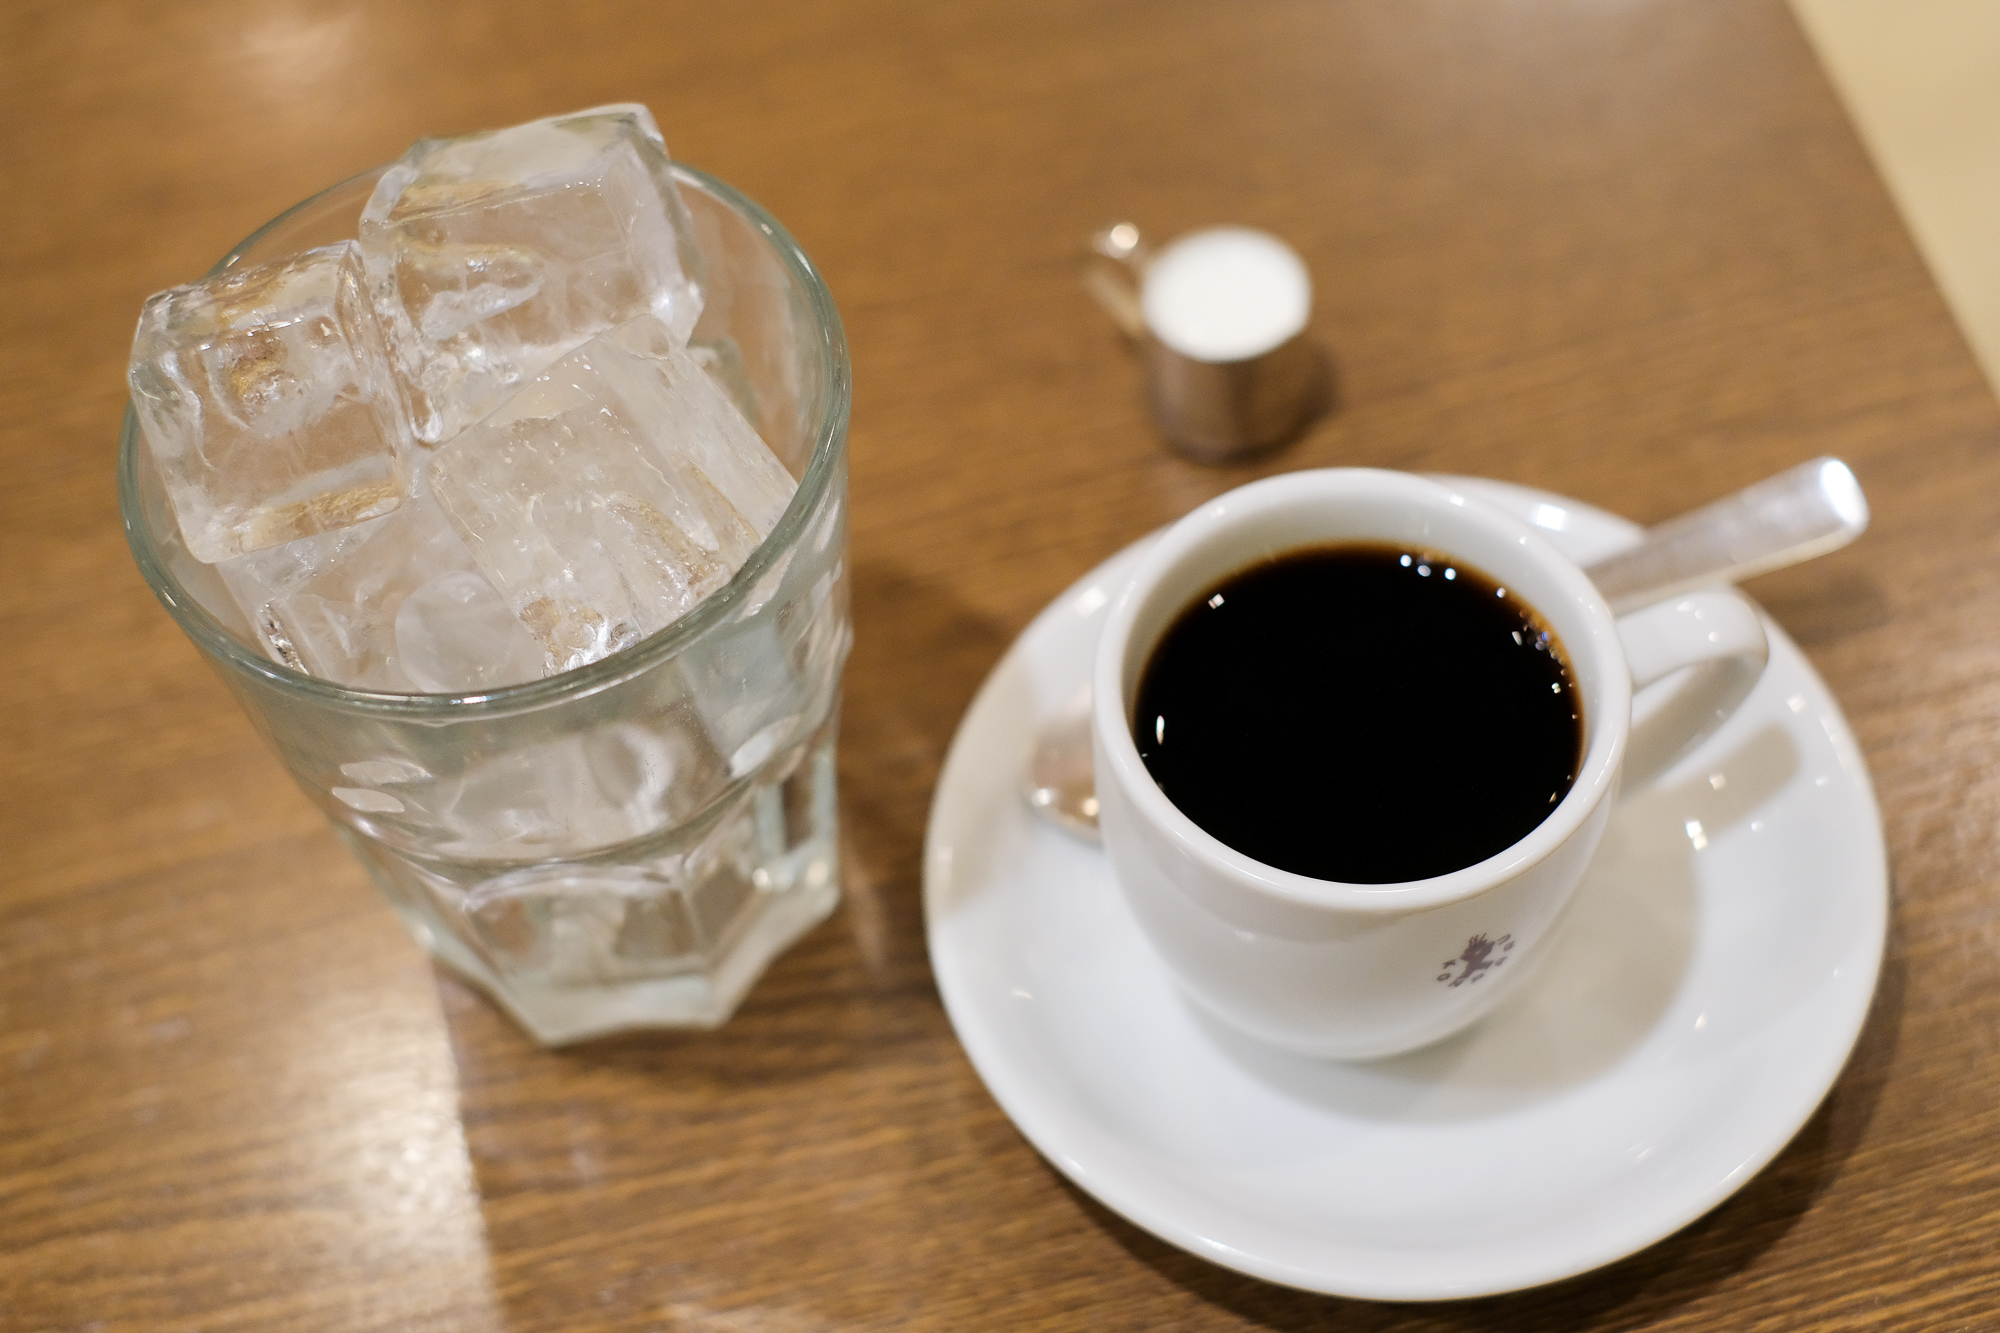 ぐるぐる名古屋 名古屋の喫茶店コンパルのアイス珈琲は これをこうしてこうじゃ T Co Eu5f0ocuk6 Twitter